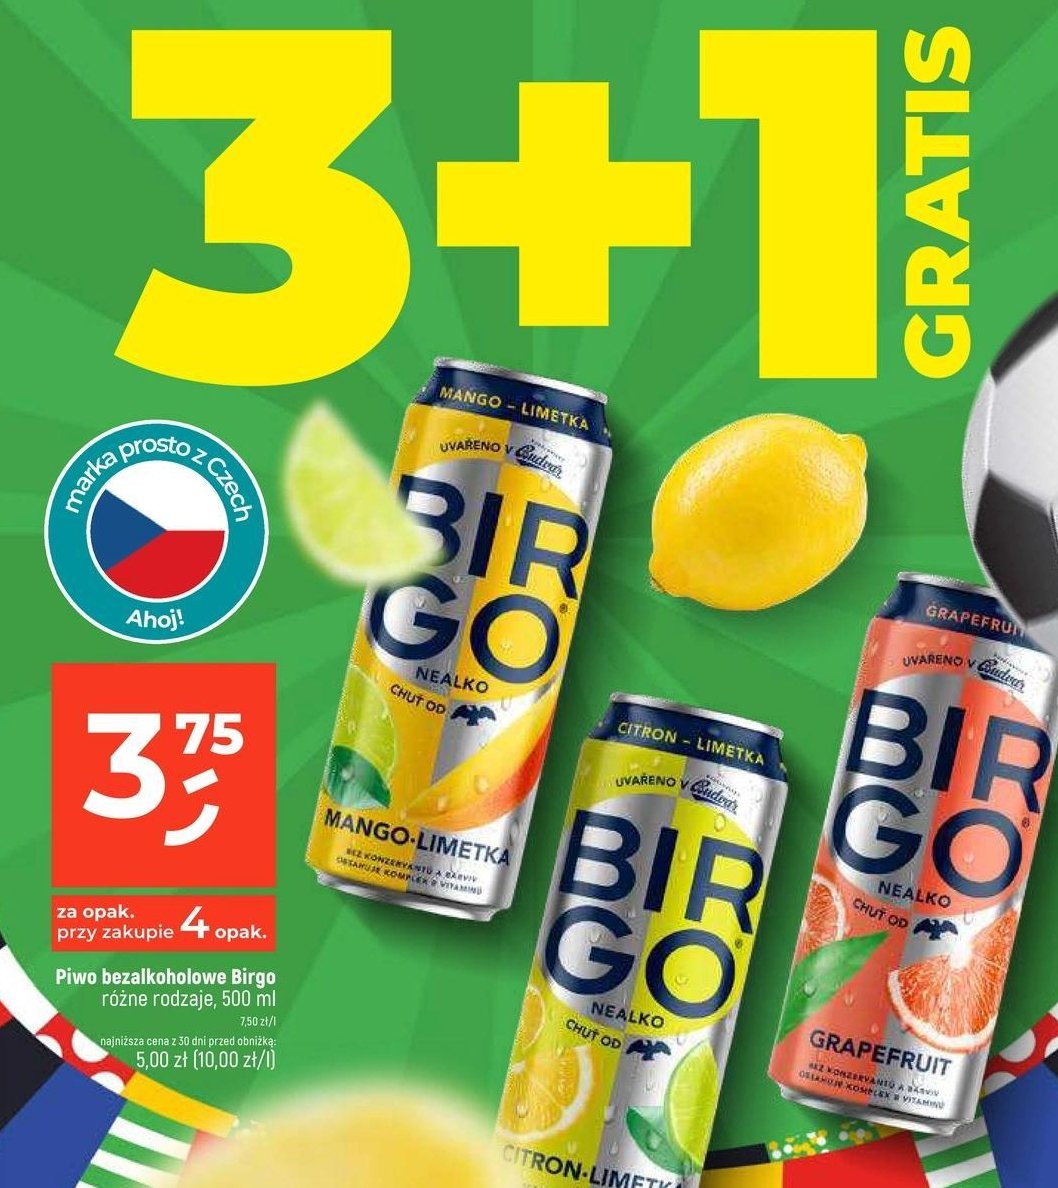 Piwo Birgo mango- limetka promocja